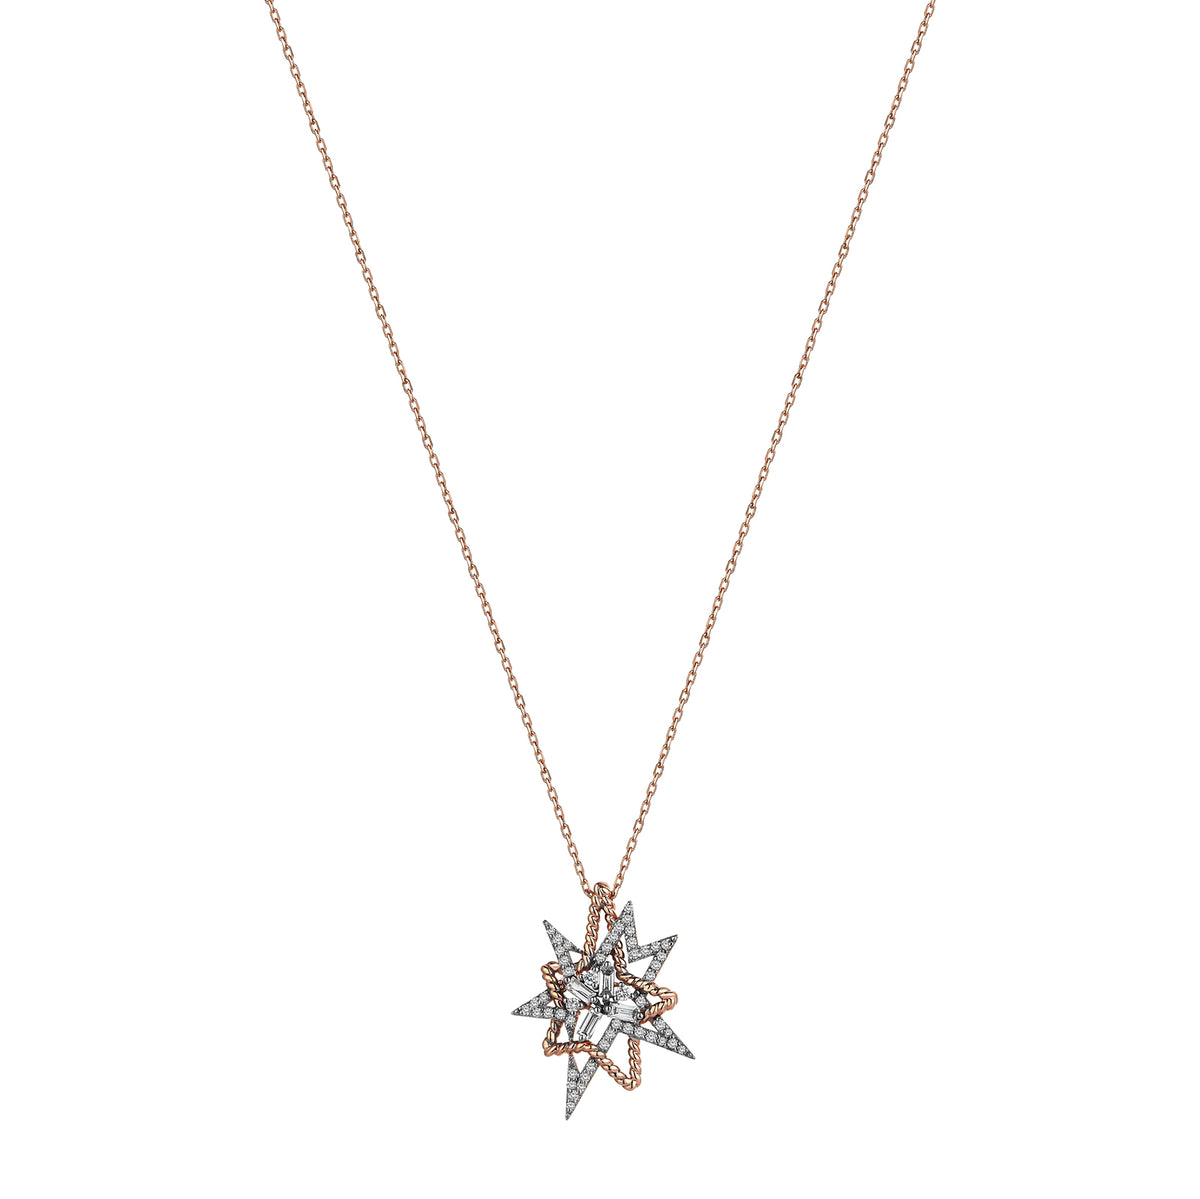 Nebula Necklace